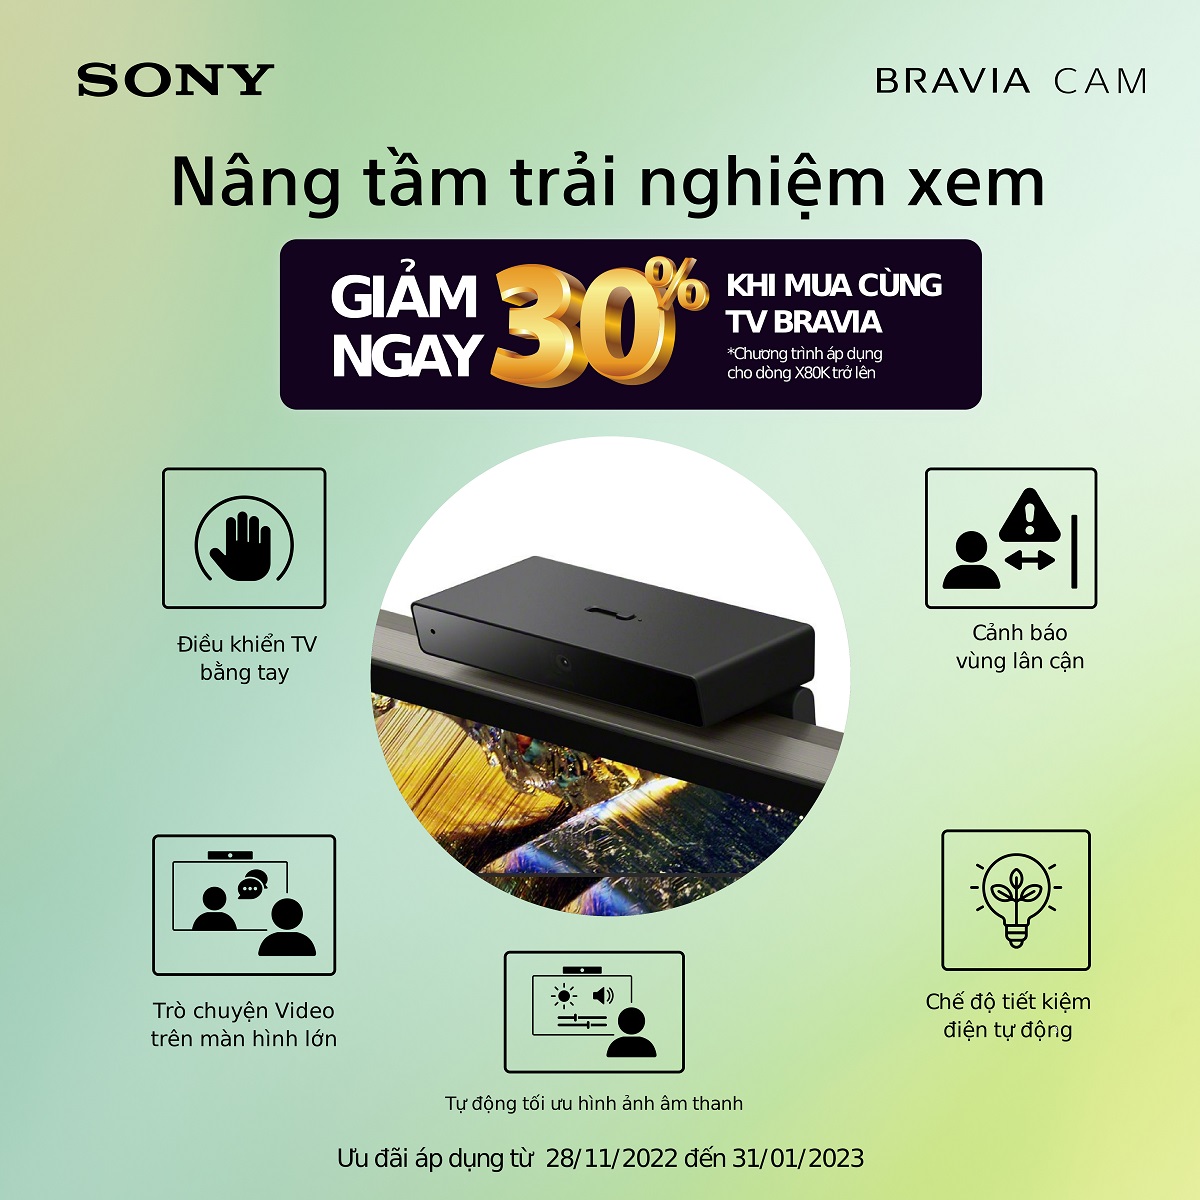 BRAVIA CAM giúp trò chuyện và điều khiển TV Sony cực đơn giản